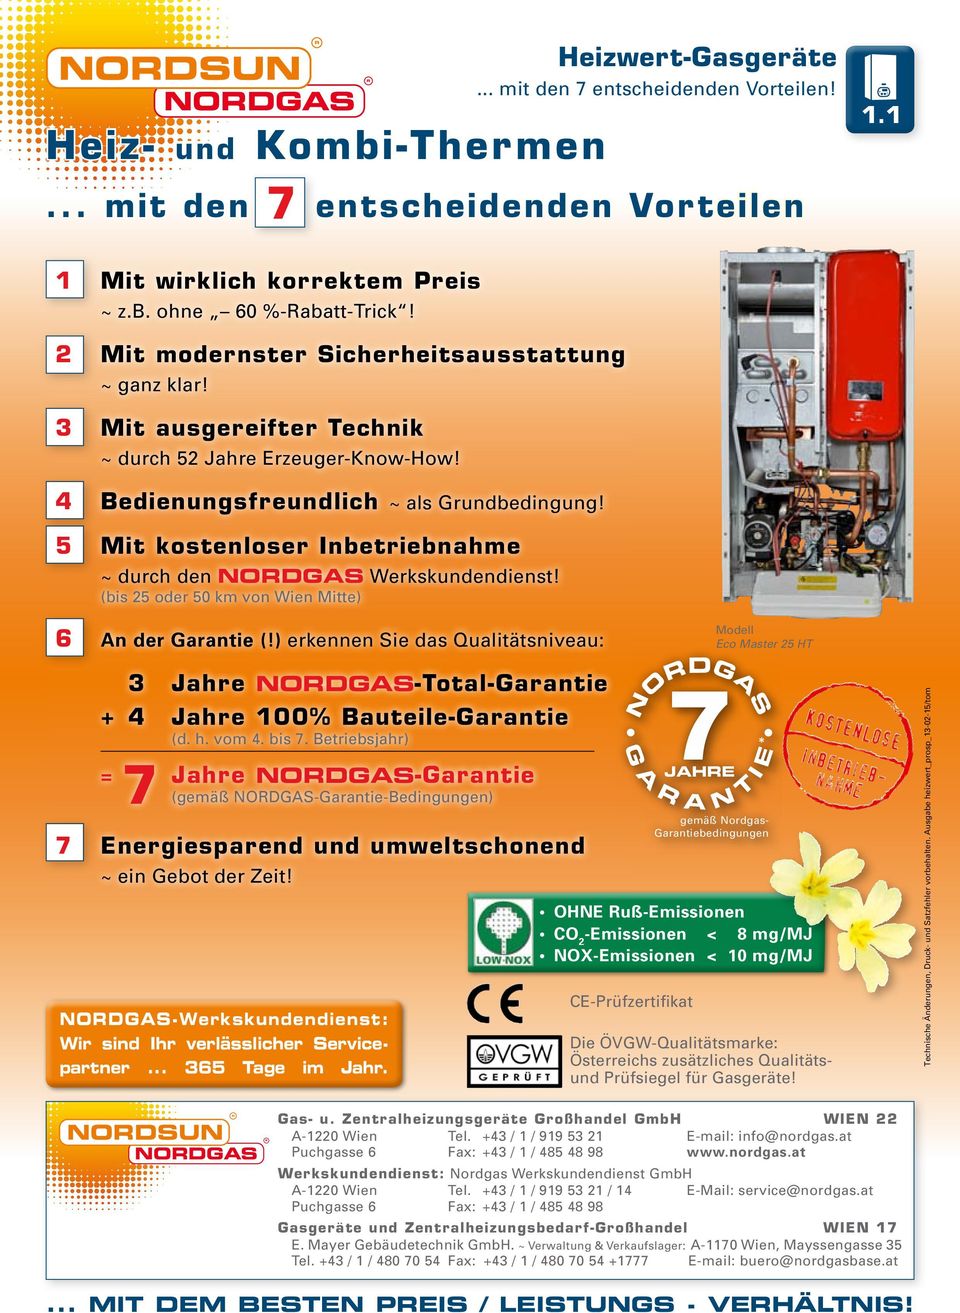 5 Mit kostenloser Inbetriebnahme ~ durch den Nordgas Werkskundendienst! (bis 25 oder 50 km von Wien Mitte) 6 An der Garantie (!